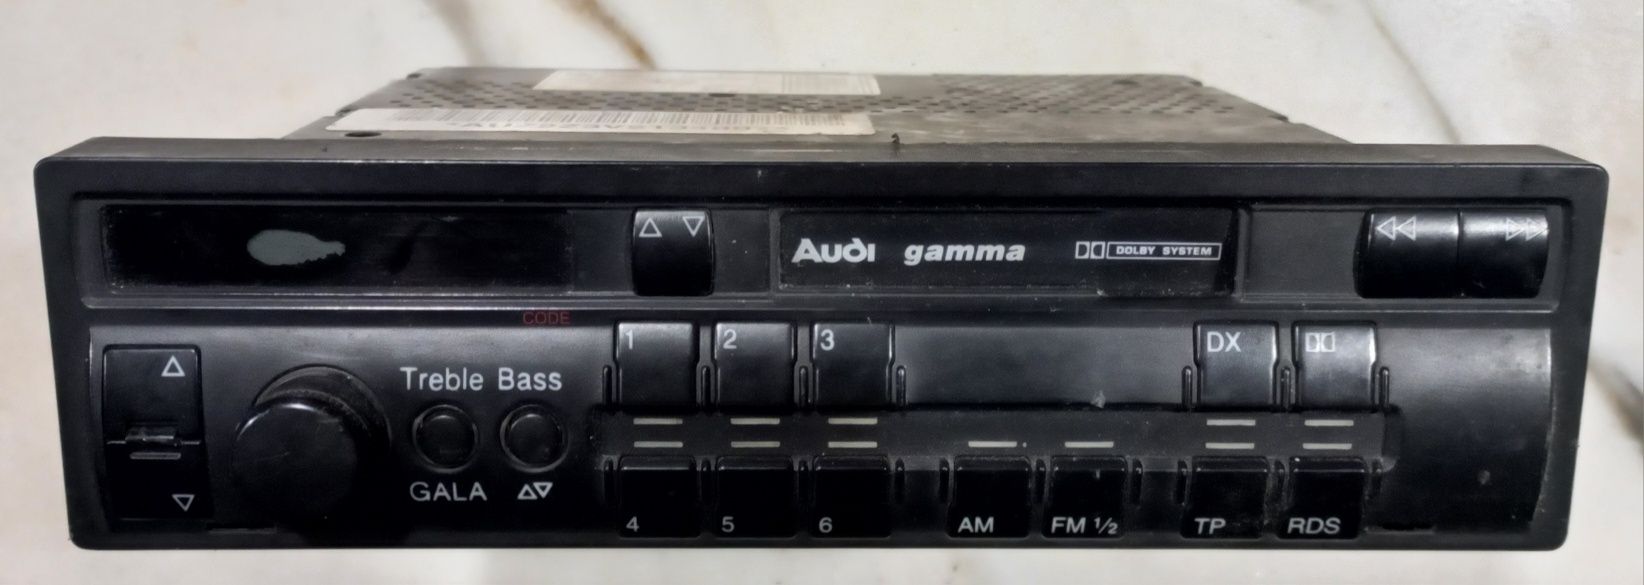 Radio-cassetes para carro